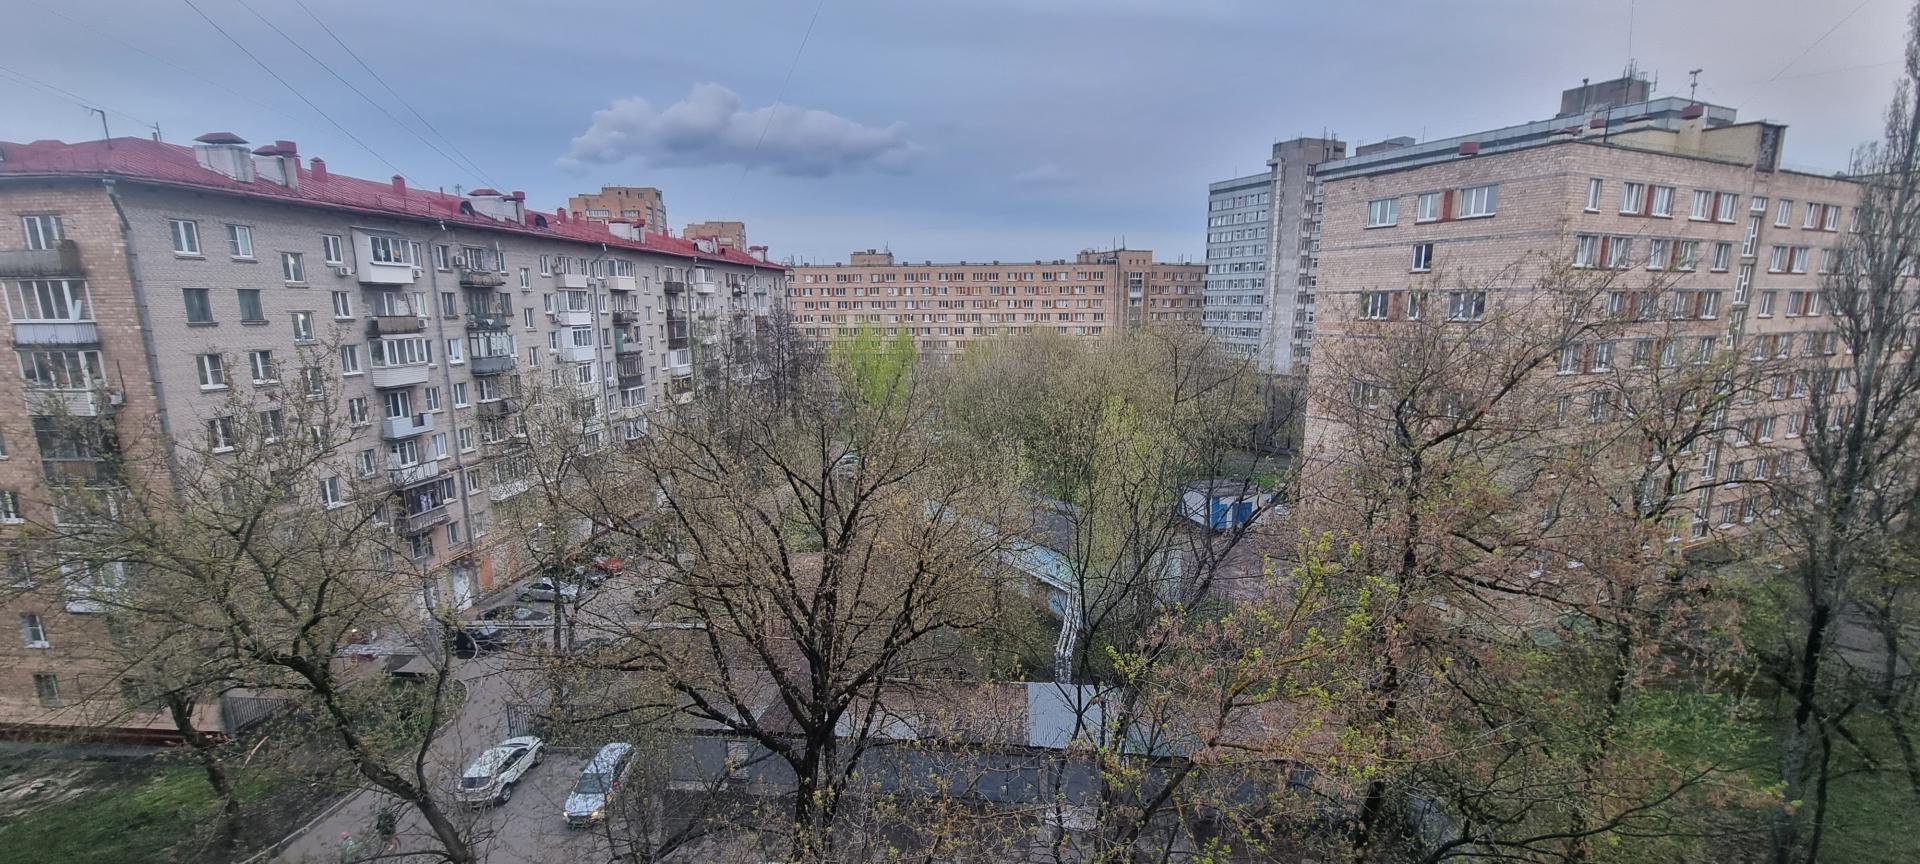 Продам квартиру в Москве по адресу улица Бориса Галушкина, 16, площадь 598 квм Недвижимость Москва (Россия)  (+балкон) и 17,1  кв